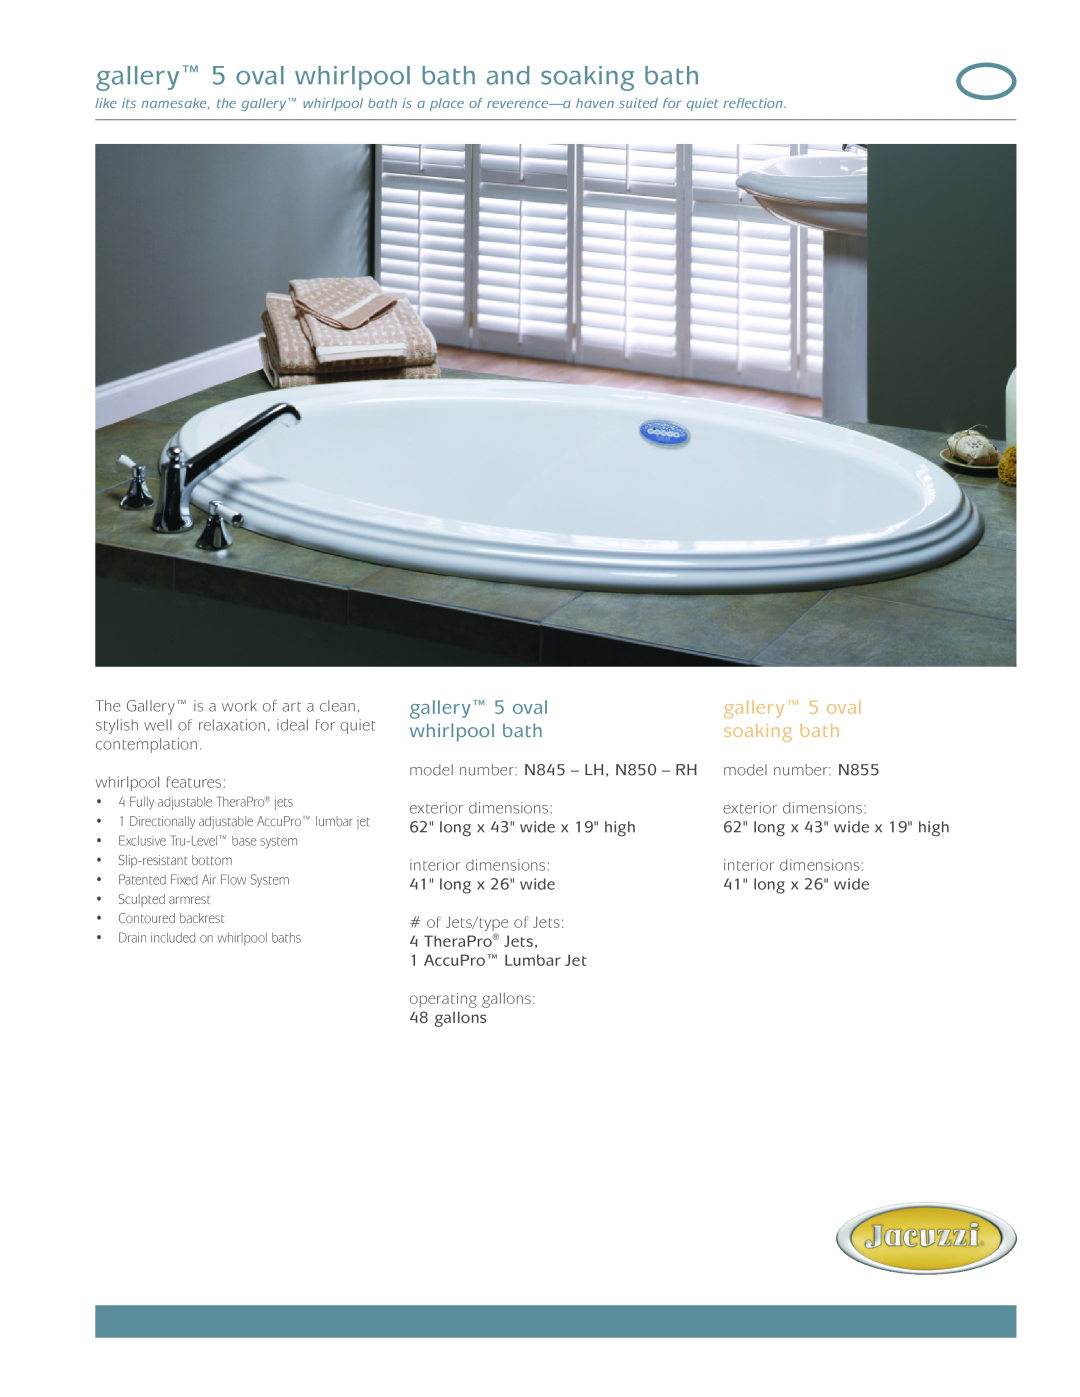 Jacuzzi N850-RH, N855, N845-LH dimensions gallery 5 oval whirlpool bath and soaking bath 